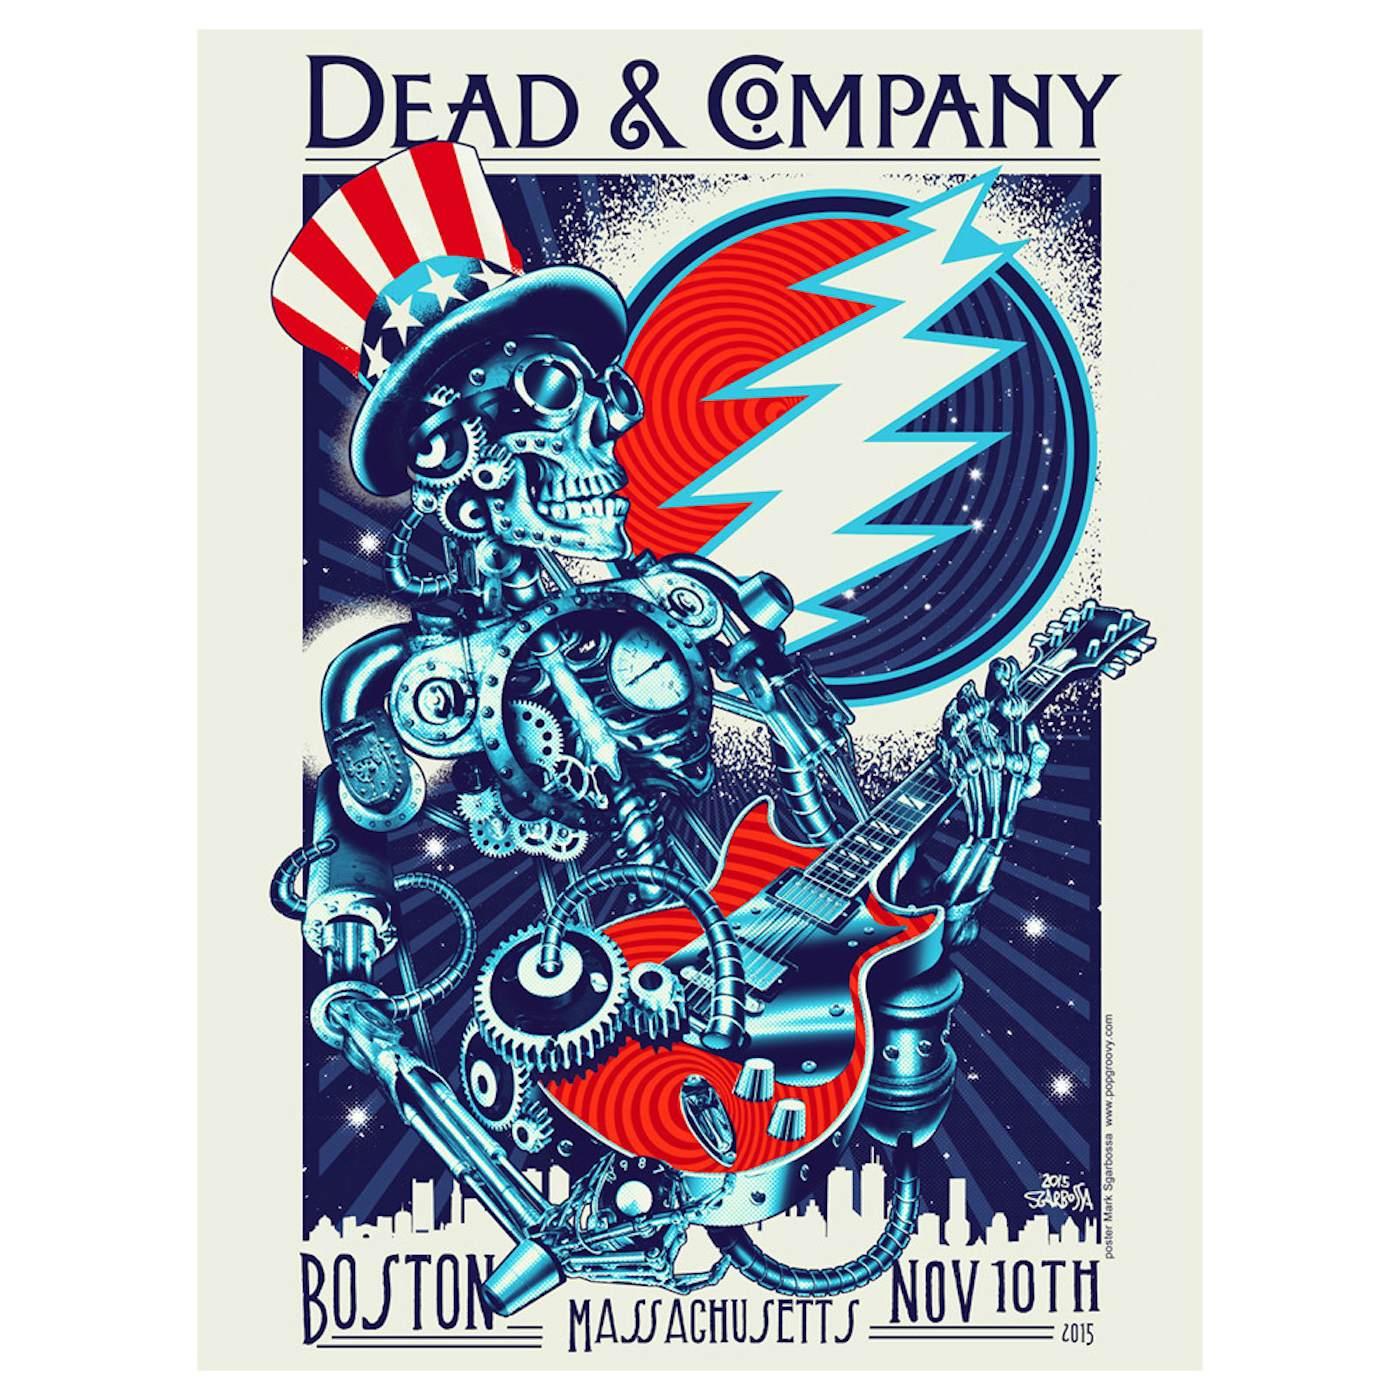 Dead & Company Boston, Massachusetts Exclusive Event Poster